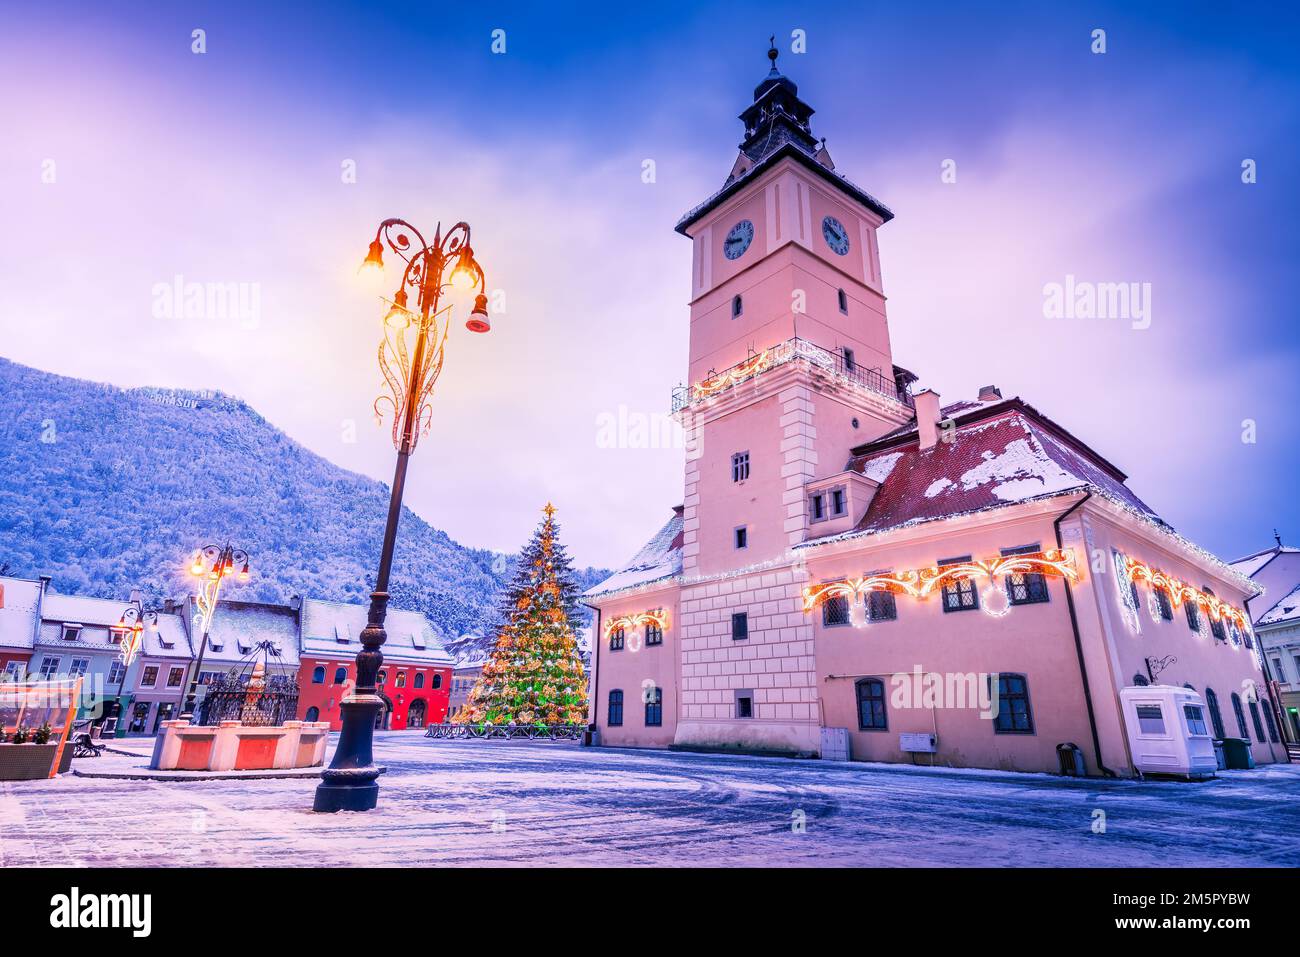 Brasov, Romania. Snowy scenic Main Square with Christmas Tree, winter holidays. Stock Photo